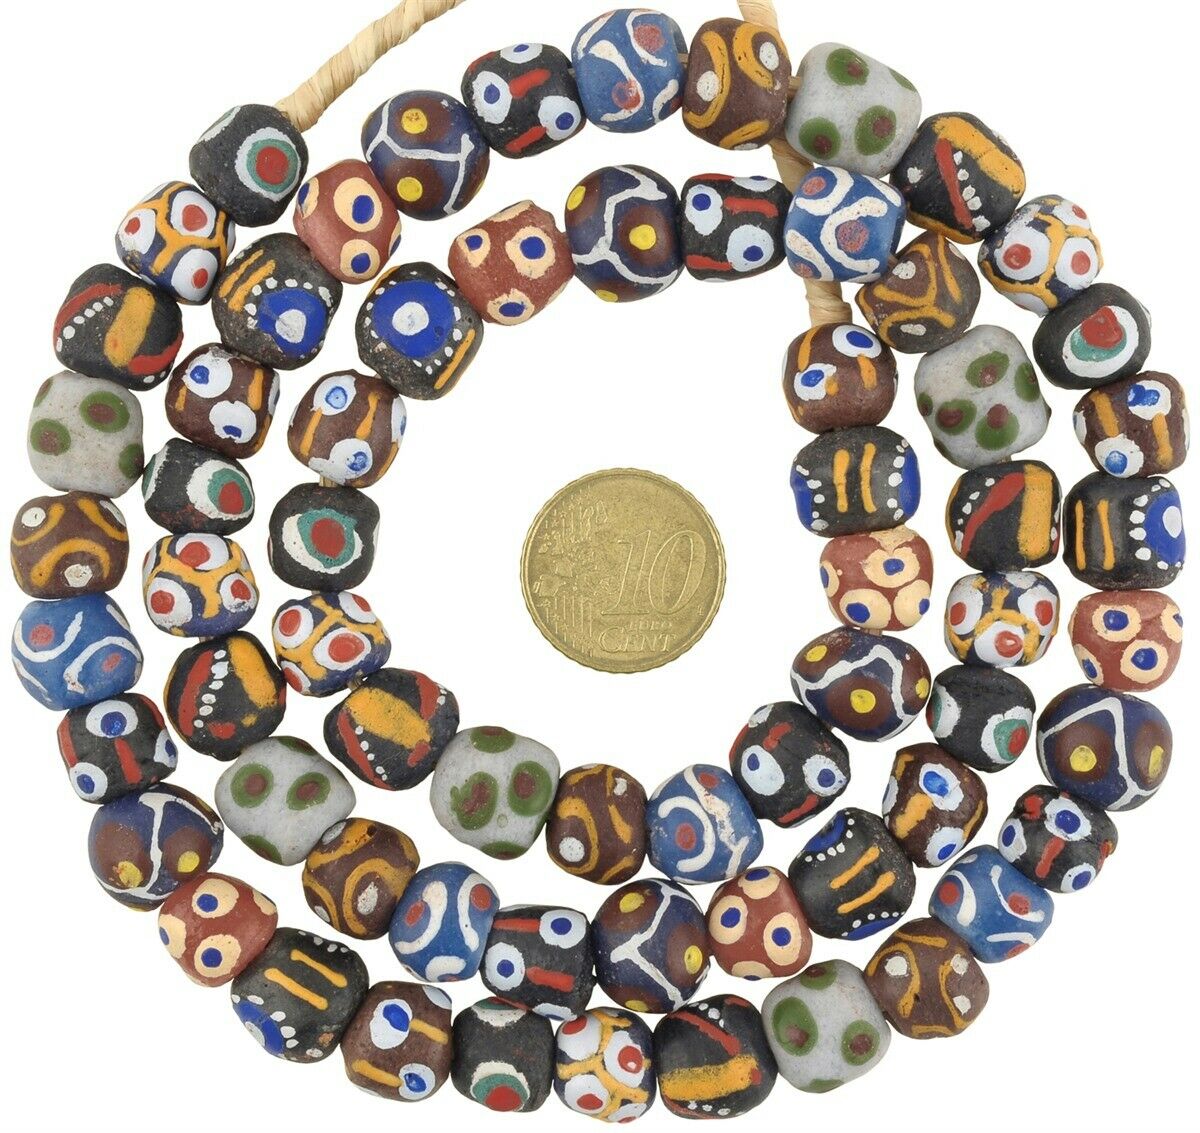 Krobo-Perlen, recyceltes Pulverglas, handgefertigt, afrikanischer Handel, ethnische Halskette, Ghana – Tribalgh